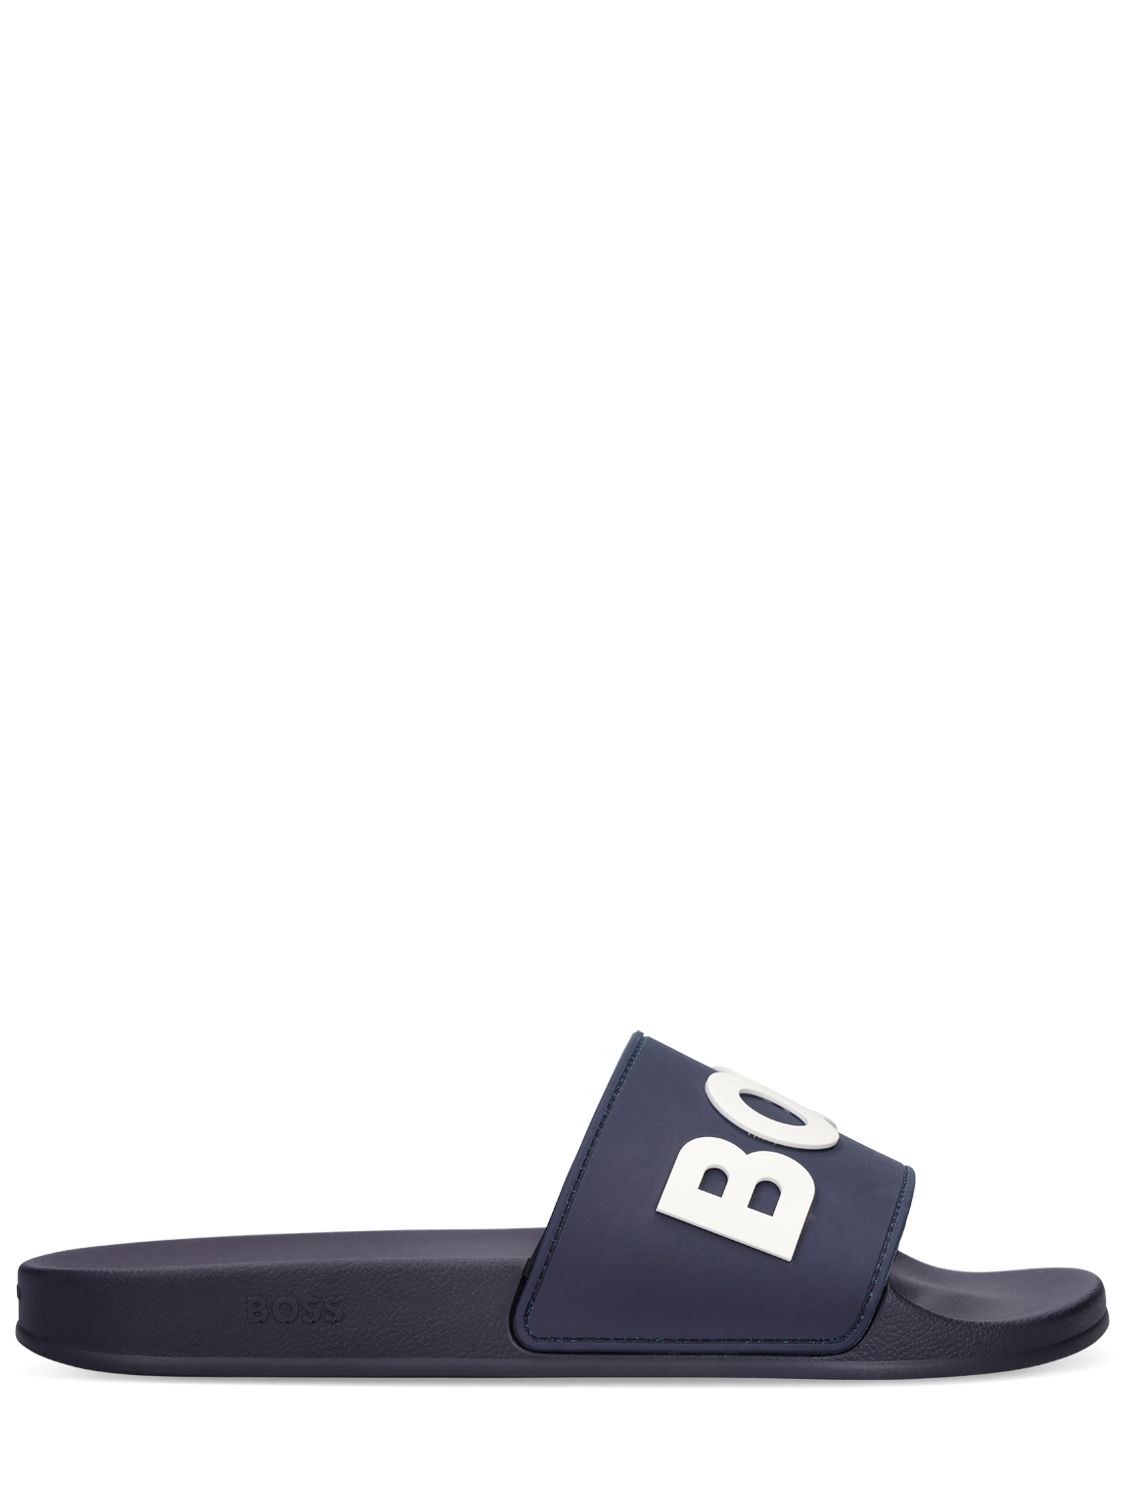 Hugo Boss Logo Slide Sandals In Dark Blue